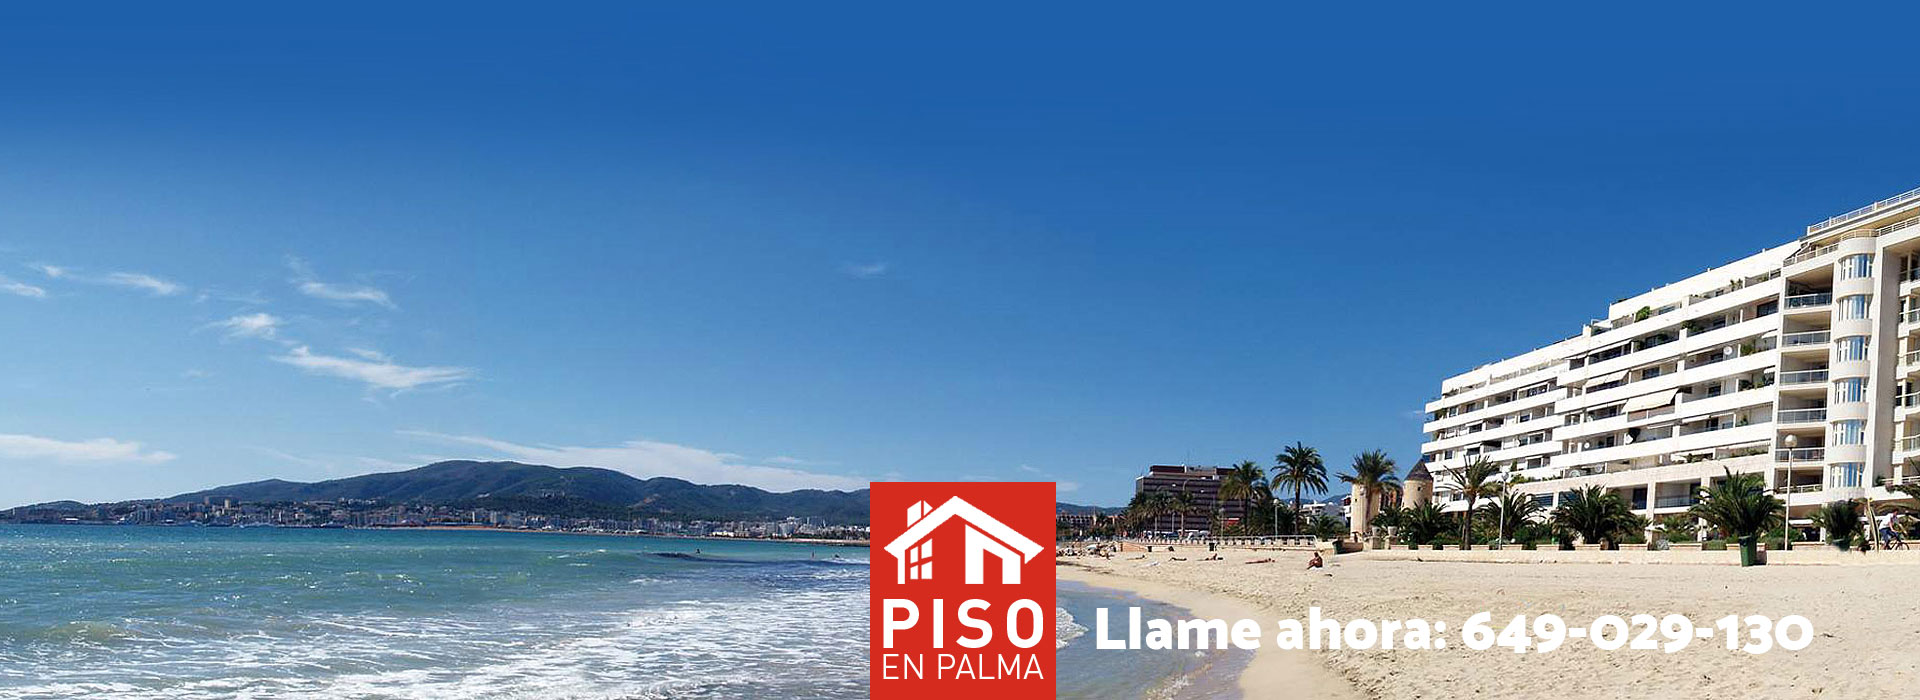 Venta y alquiler de pisos, apartamentos y chalets en Mallorca